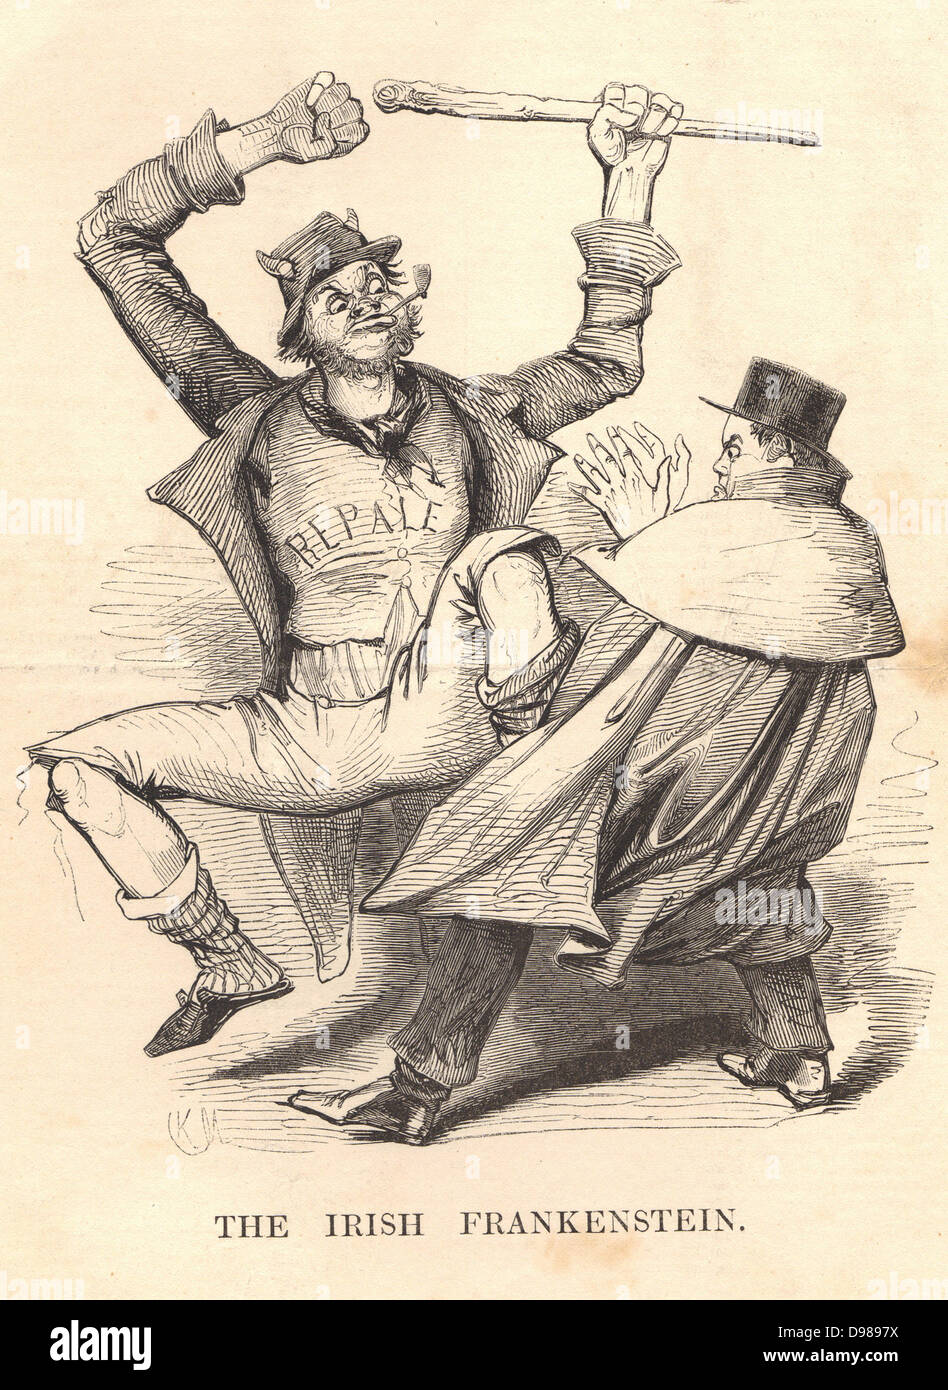 Daniel O'Connell (1755-1847) 'Le Libérateur', homme politique irlandais et patriote, illustré avec les irlandais de Frankenstein, le monstre de sa création (comme l'Angleterre l'a vu). O'Connell a entraîné l'abrogation de l'Union européenne (avec la Grande-Bretagne) mouvement. Caricature de Charles Keene de 'Punch', Londres, 1843. Banque D'Images